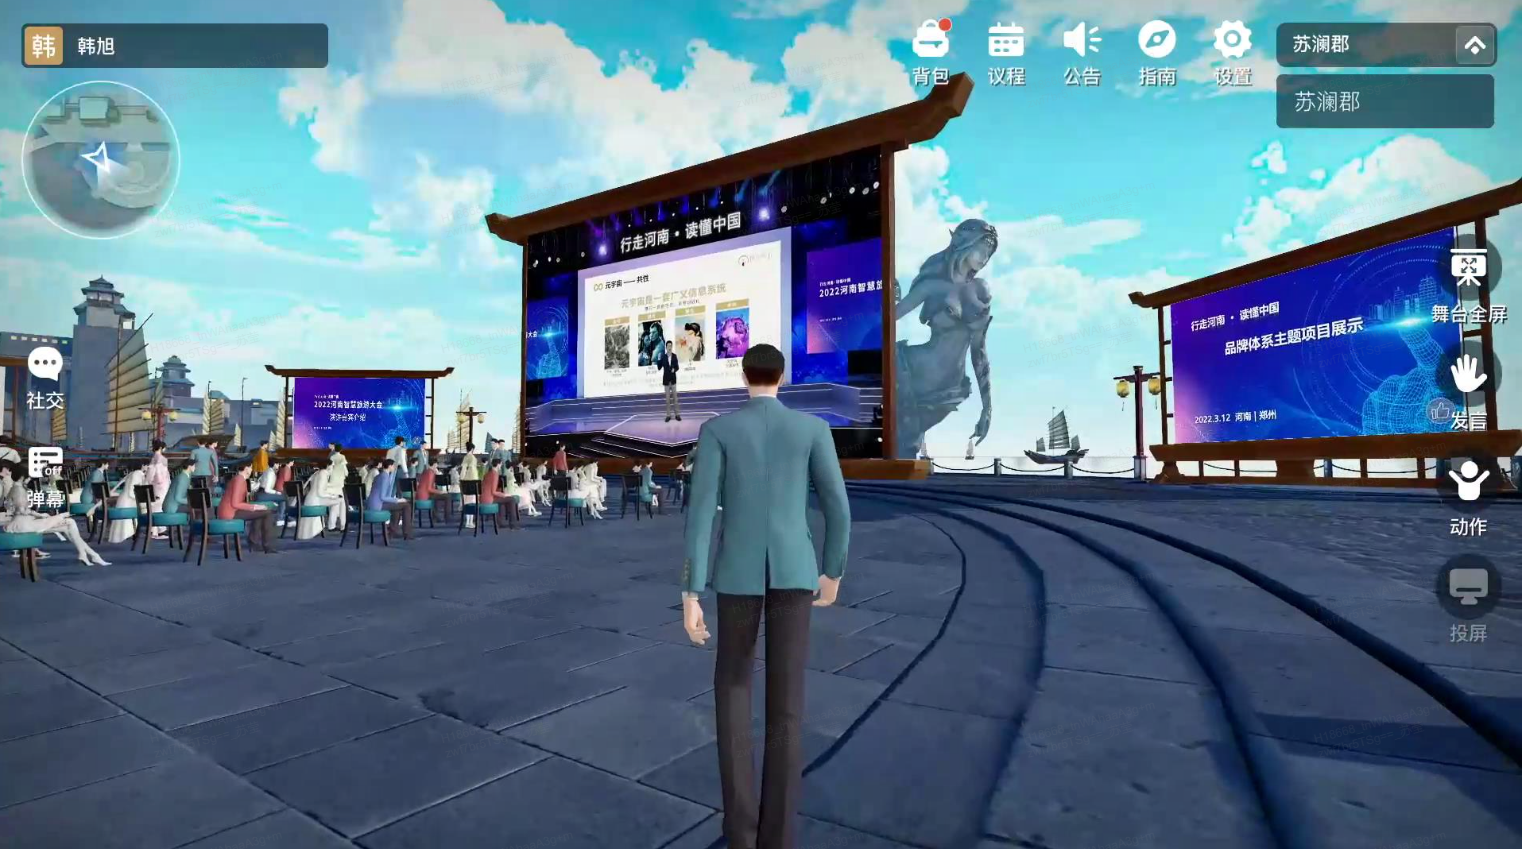 这是一个游戏或模拟场景截图，展示一个角色背对观众站在讲台前，周围有虚拟观众和大屏幕显示信息。